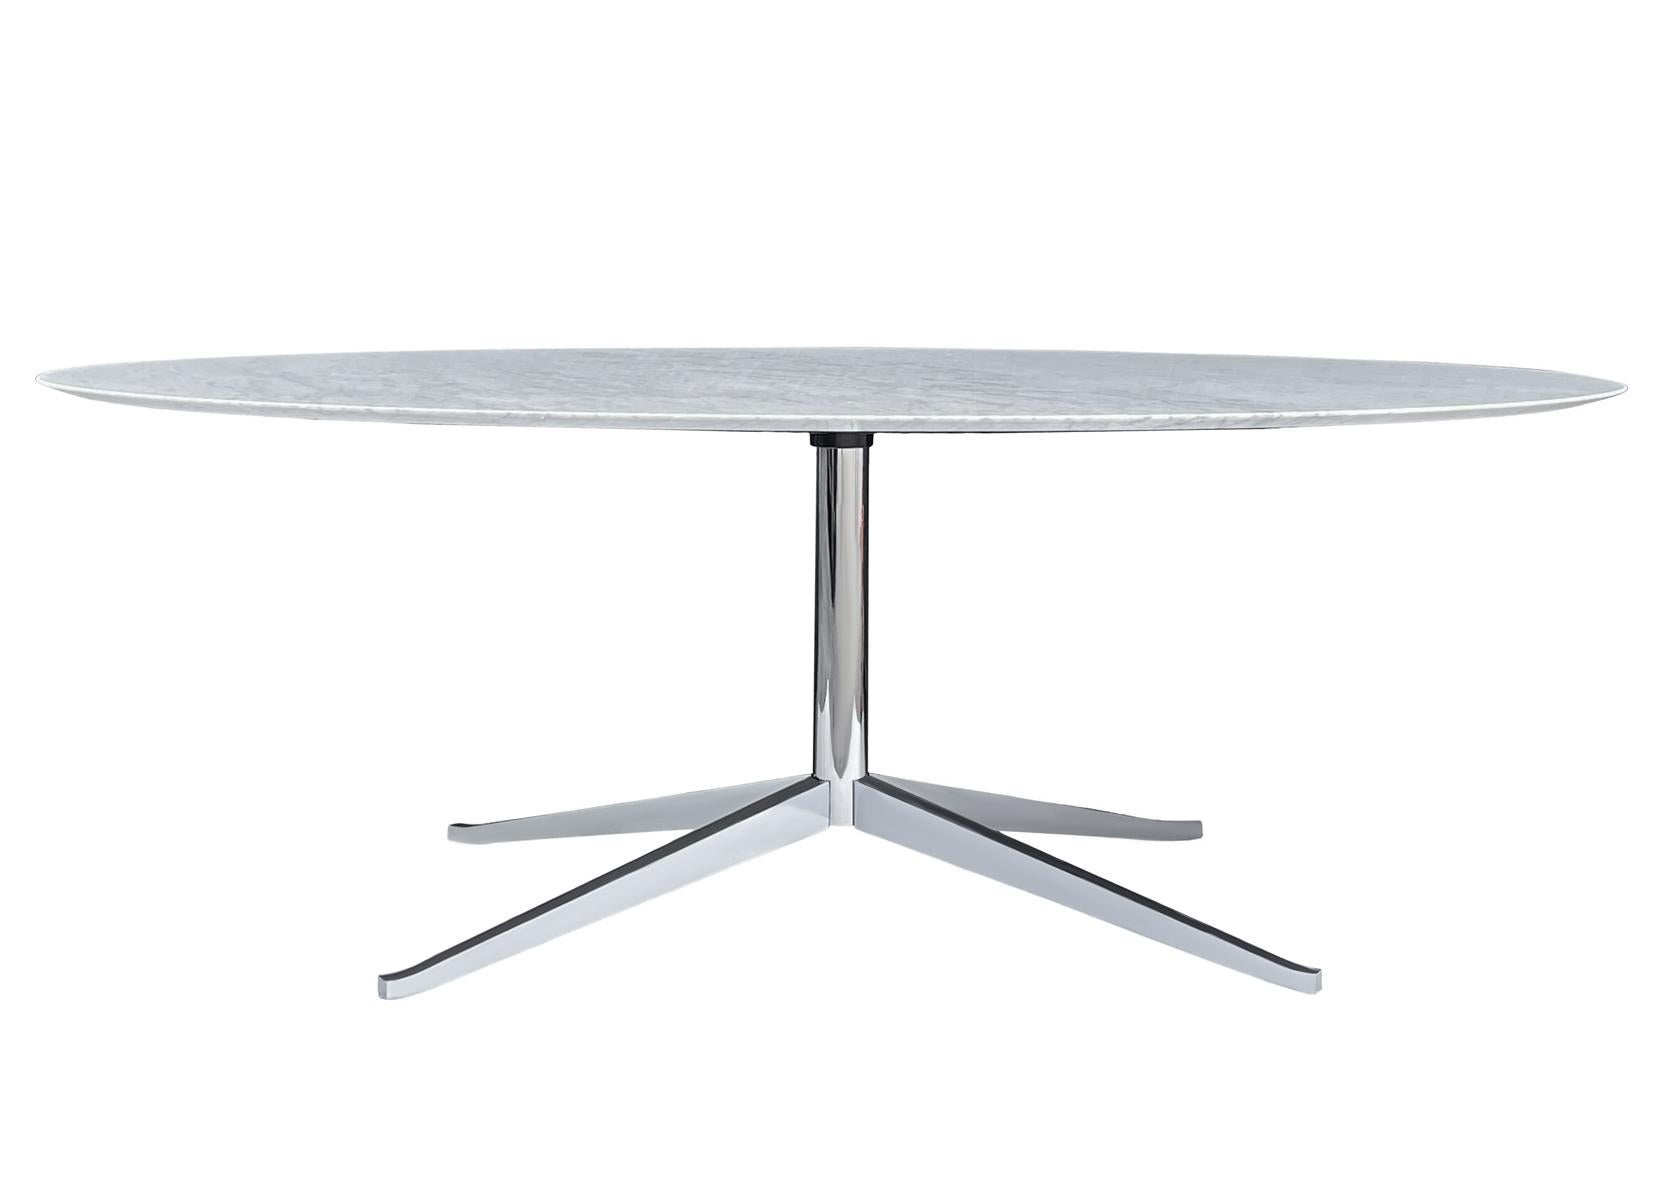 Une élégante table de direction conçue par Florence Knoll et produite par Knoll. Il est doté d'un magnifique plateau en marbre de Carrare blanc et gris poli et d'une base en étoile chromée. Ce marbre était l'un des plus chers pour cette table. Signé